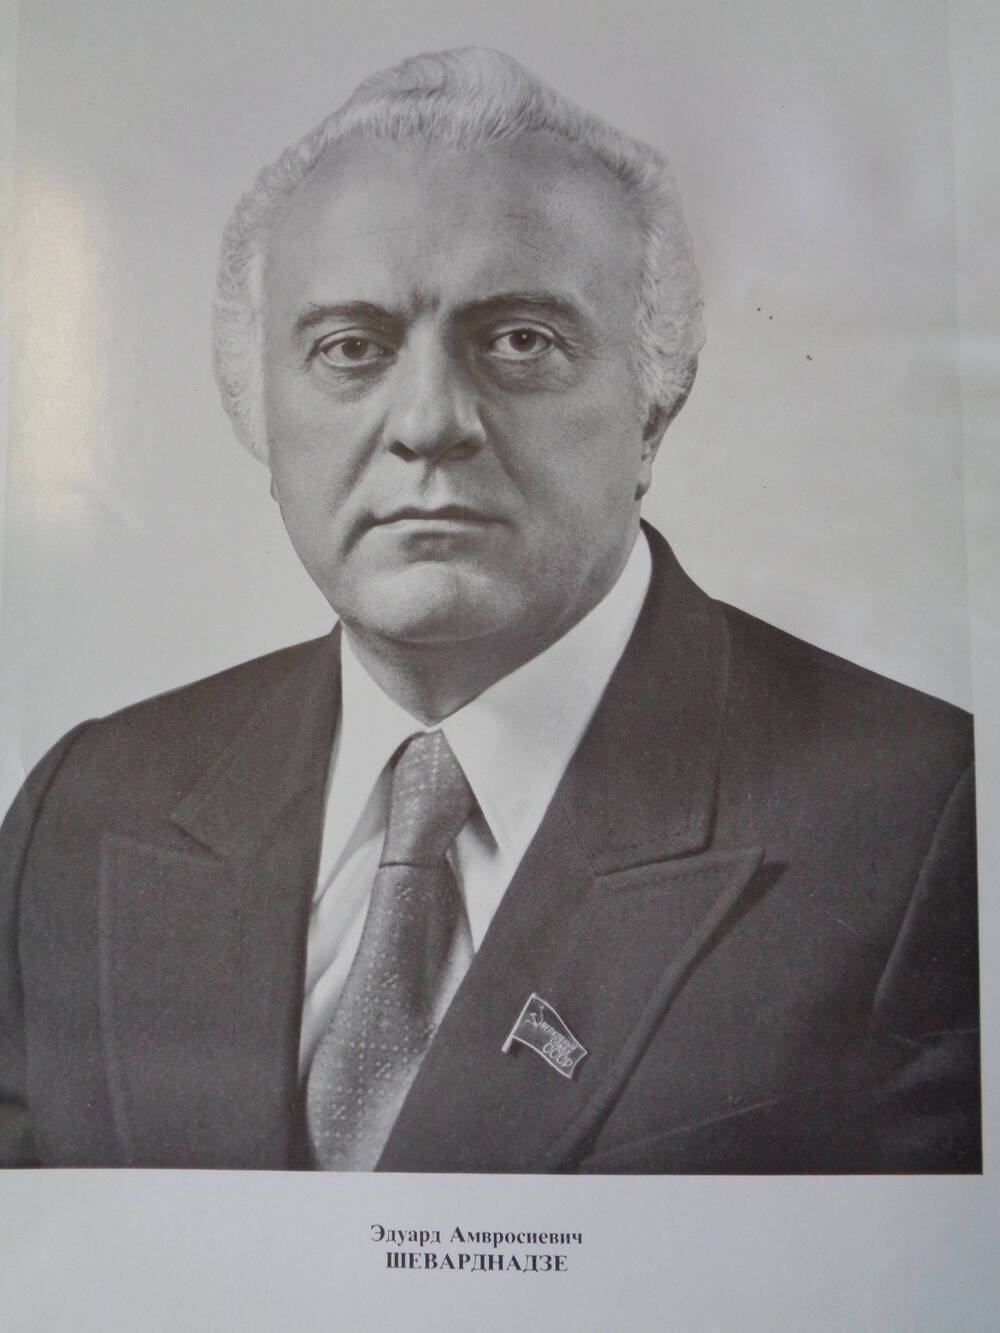 Члены Верховного Совета СССР : Эдуард Амвросиевич Шеварднадзе.